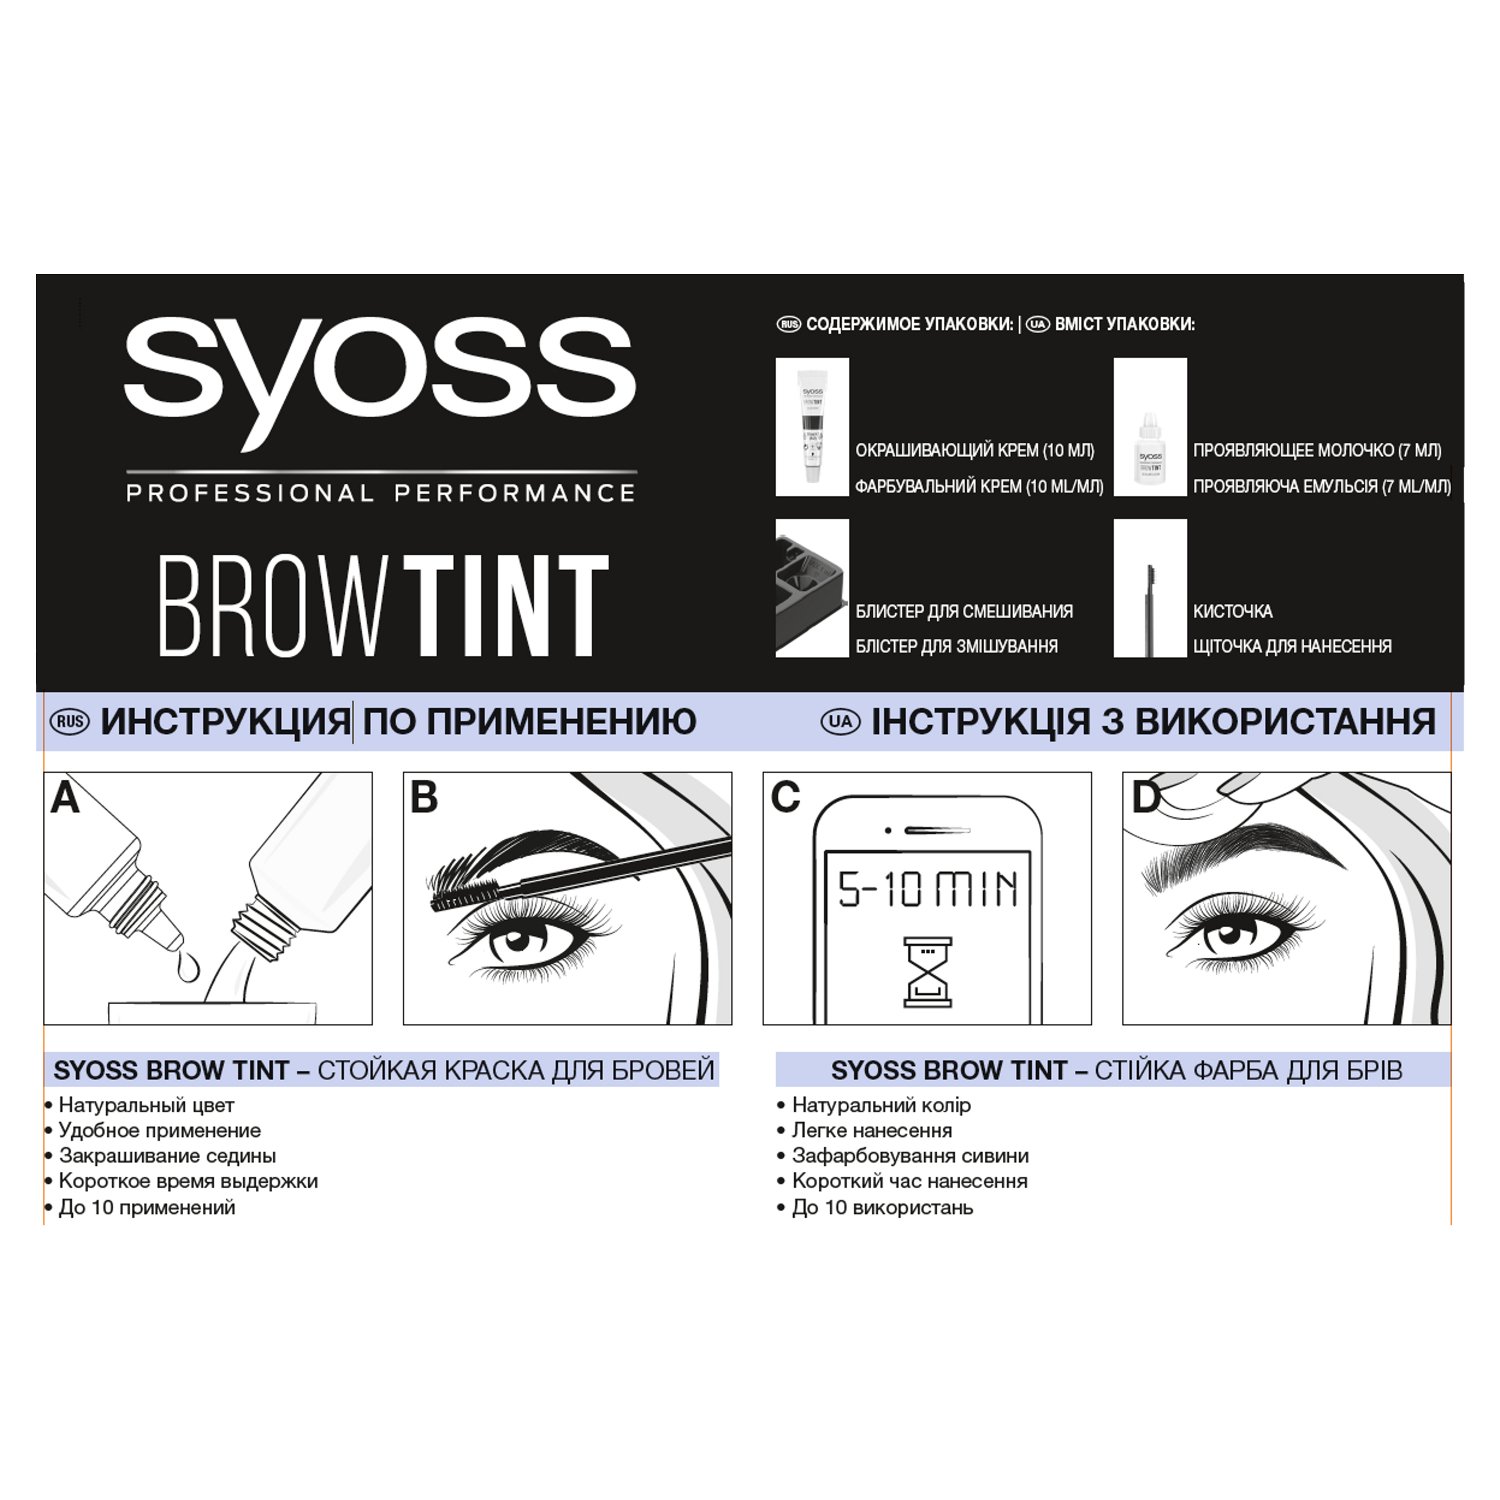 Стойкая краска для бровей Syoss Brow Tint 3-1 графитово черная 17 мл - фото 2